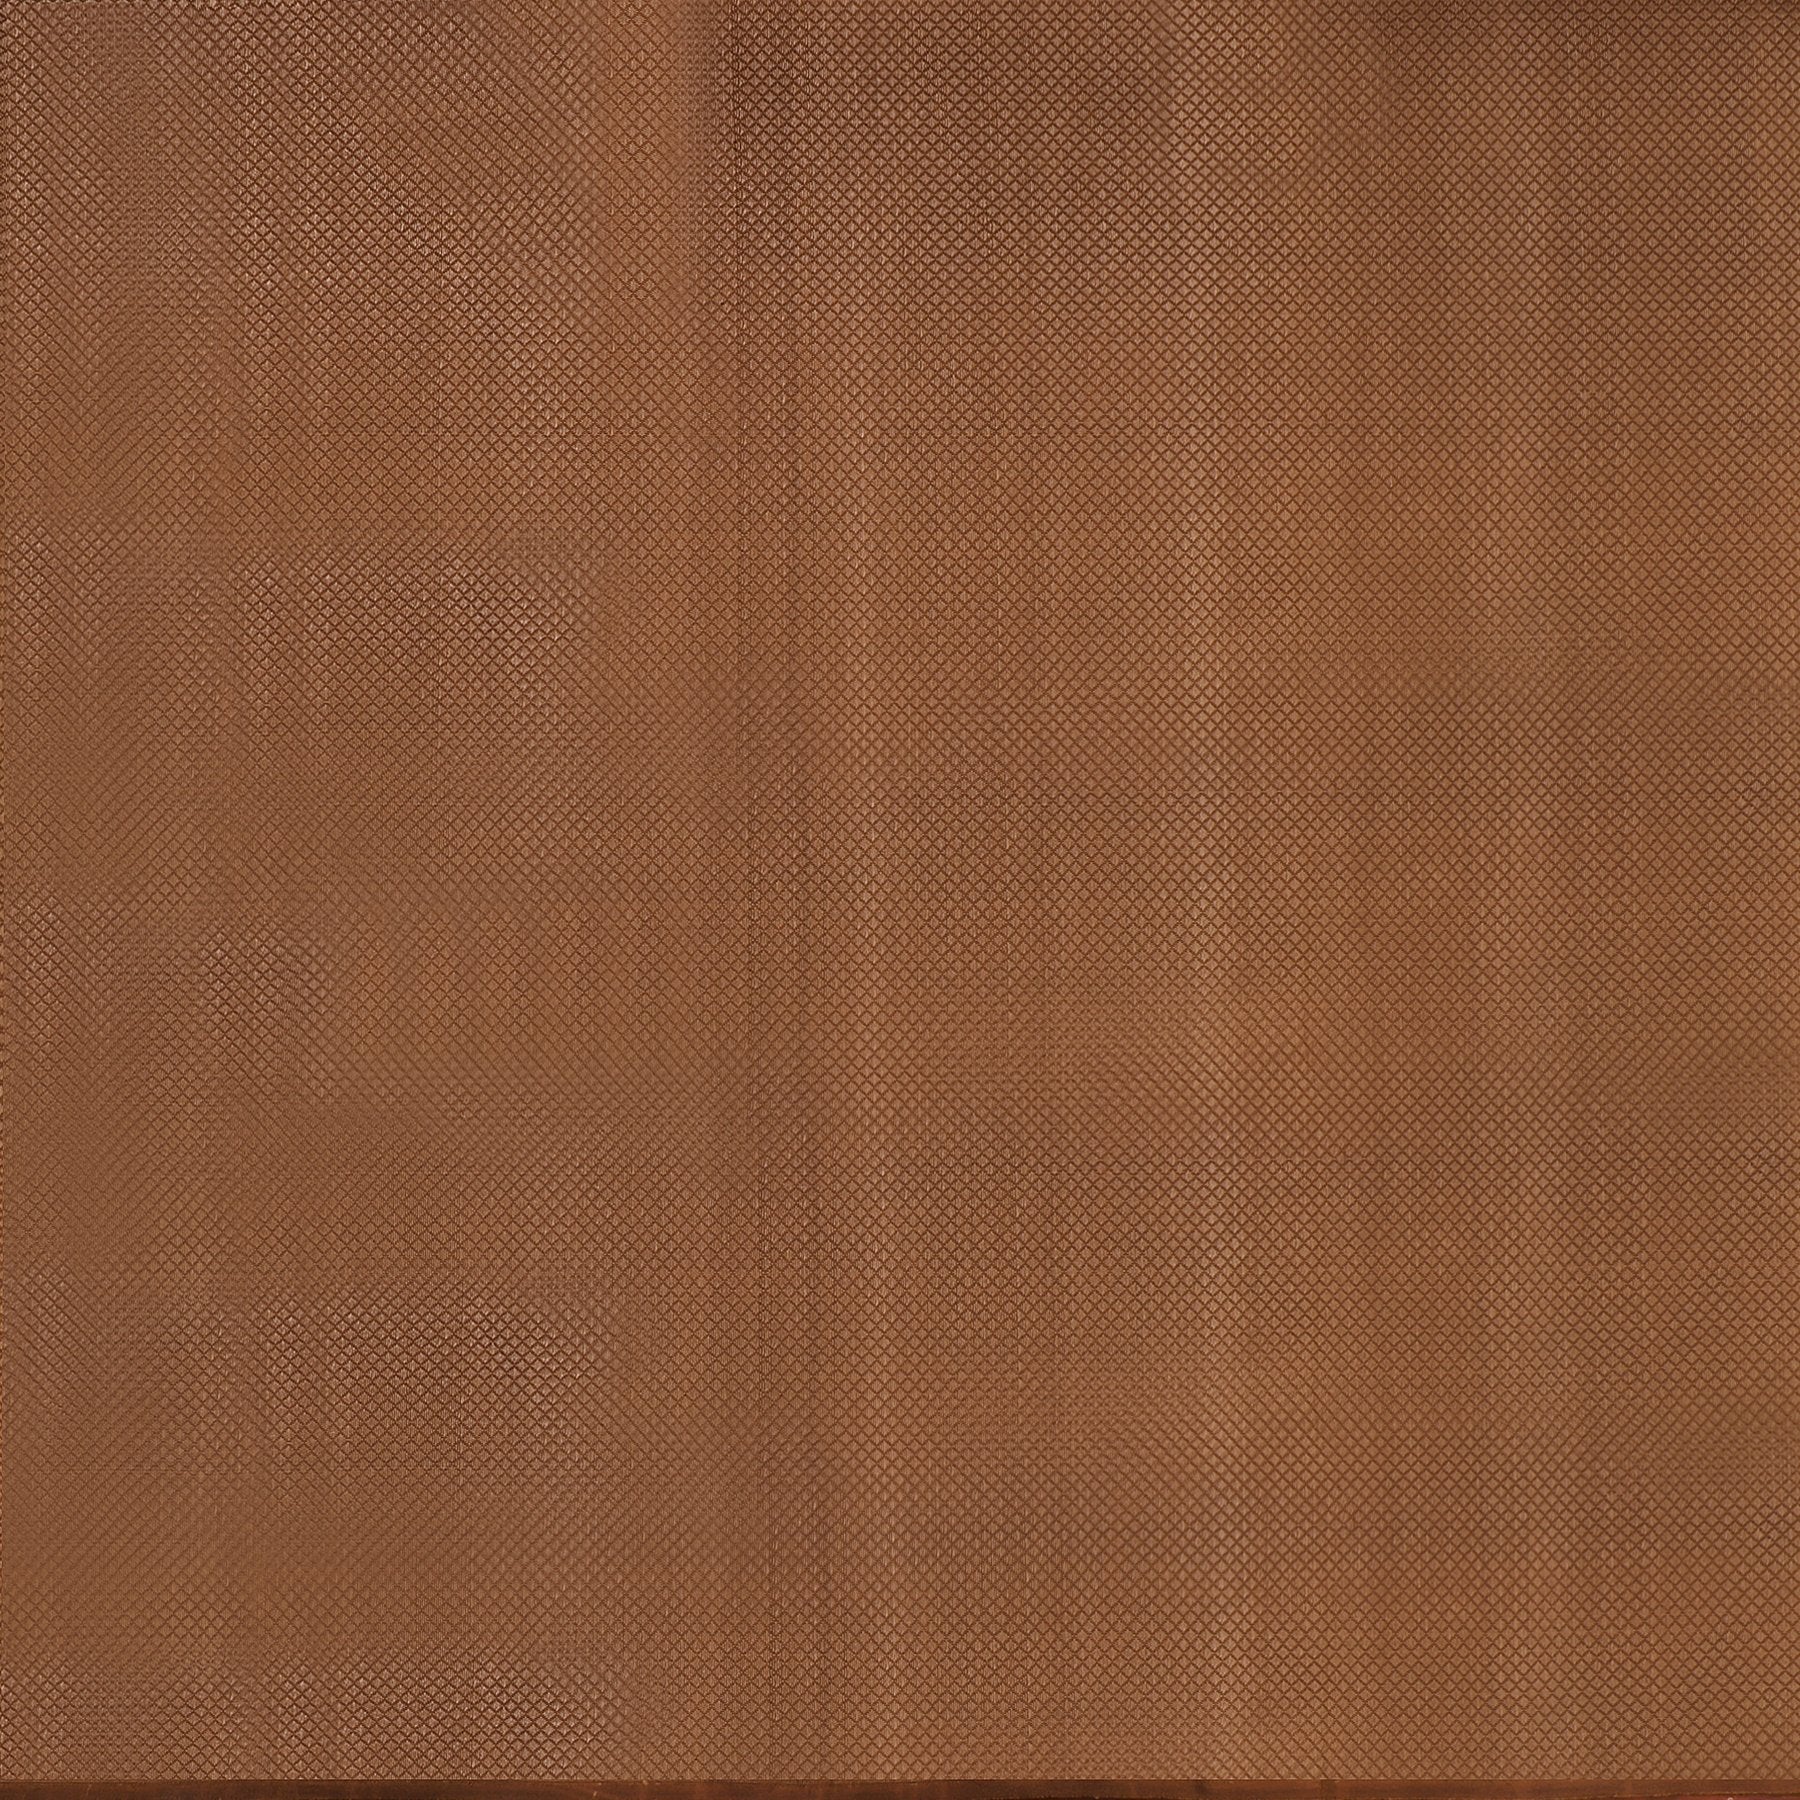 Kanakavalli Kanjivaram Silk Fabric Length 110-27-110287 - Full View